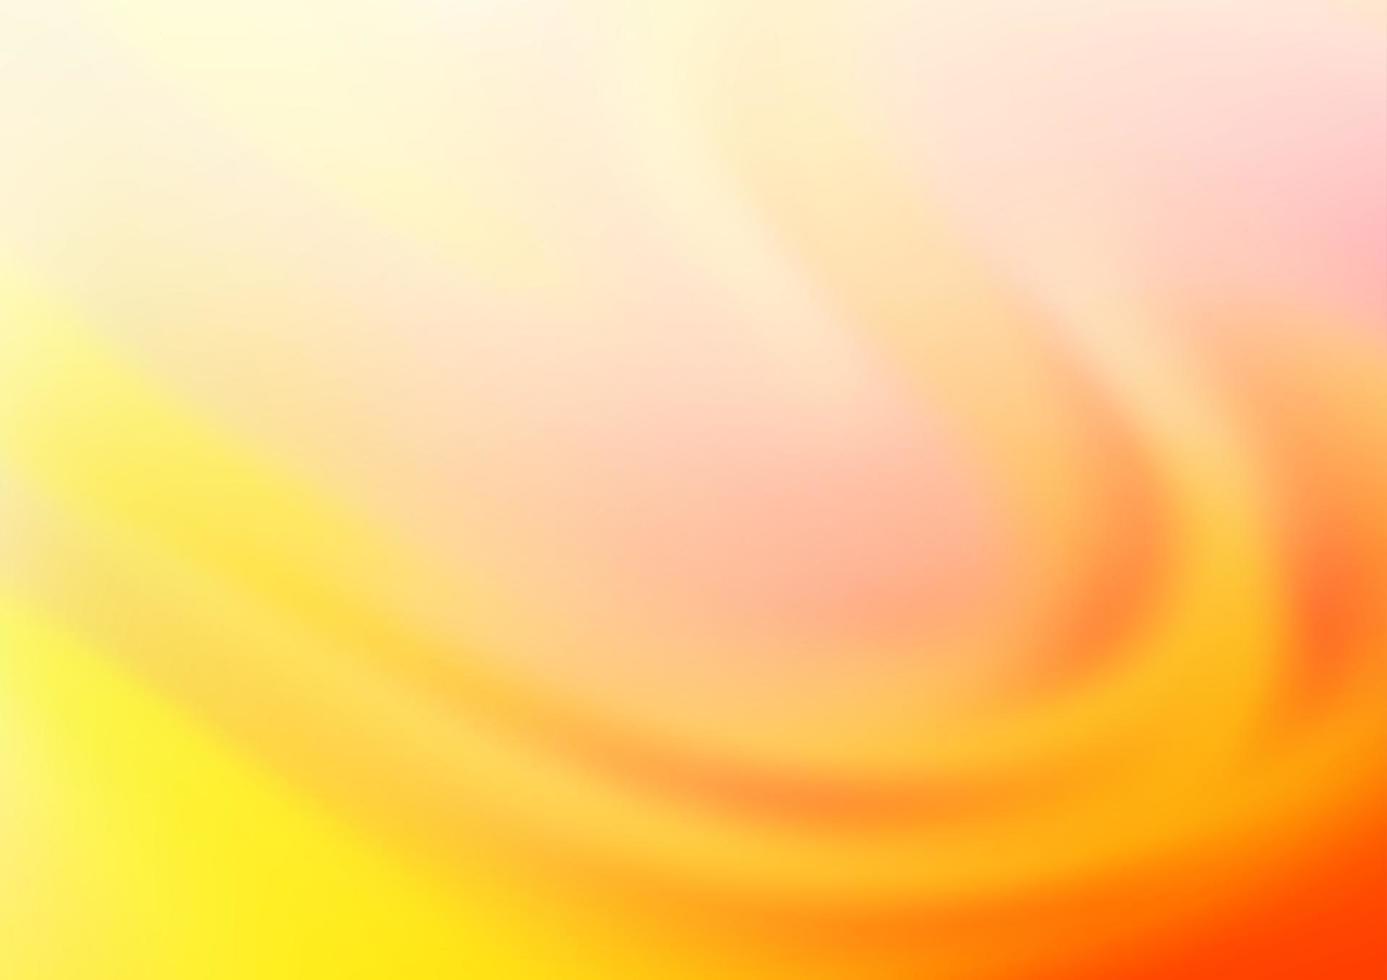 lichtgele, oranje vector wazig heldere sjabloon.